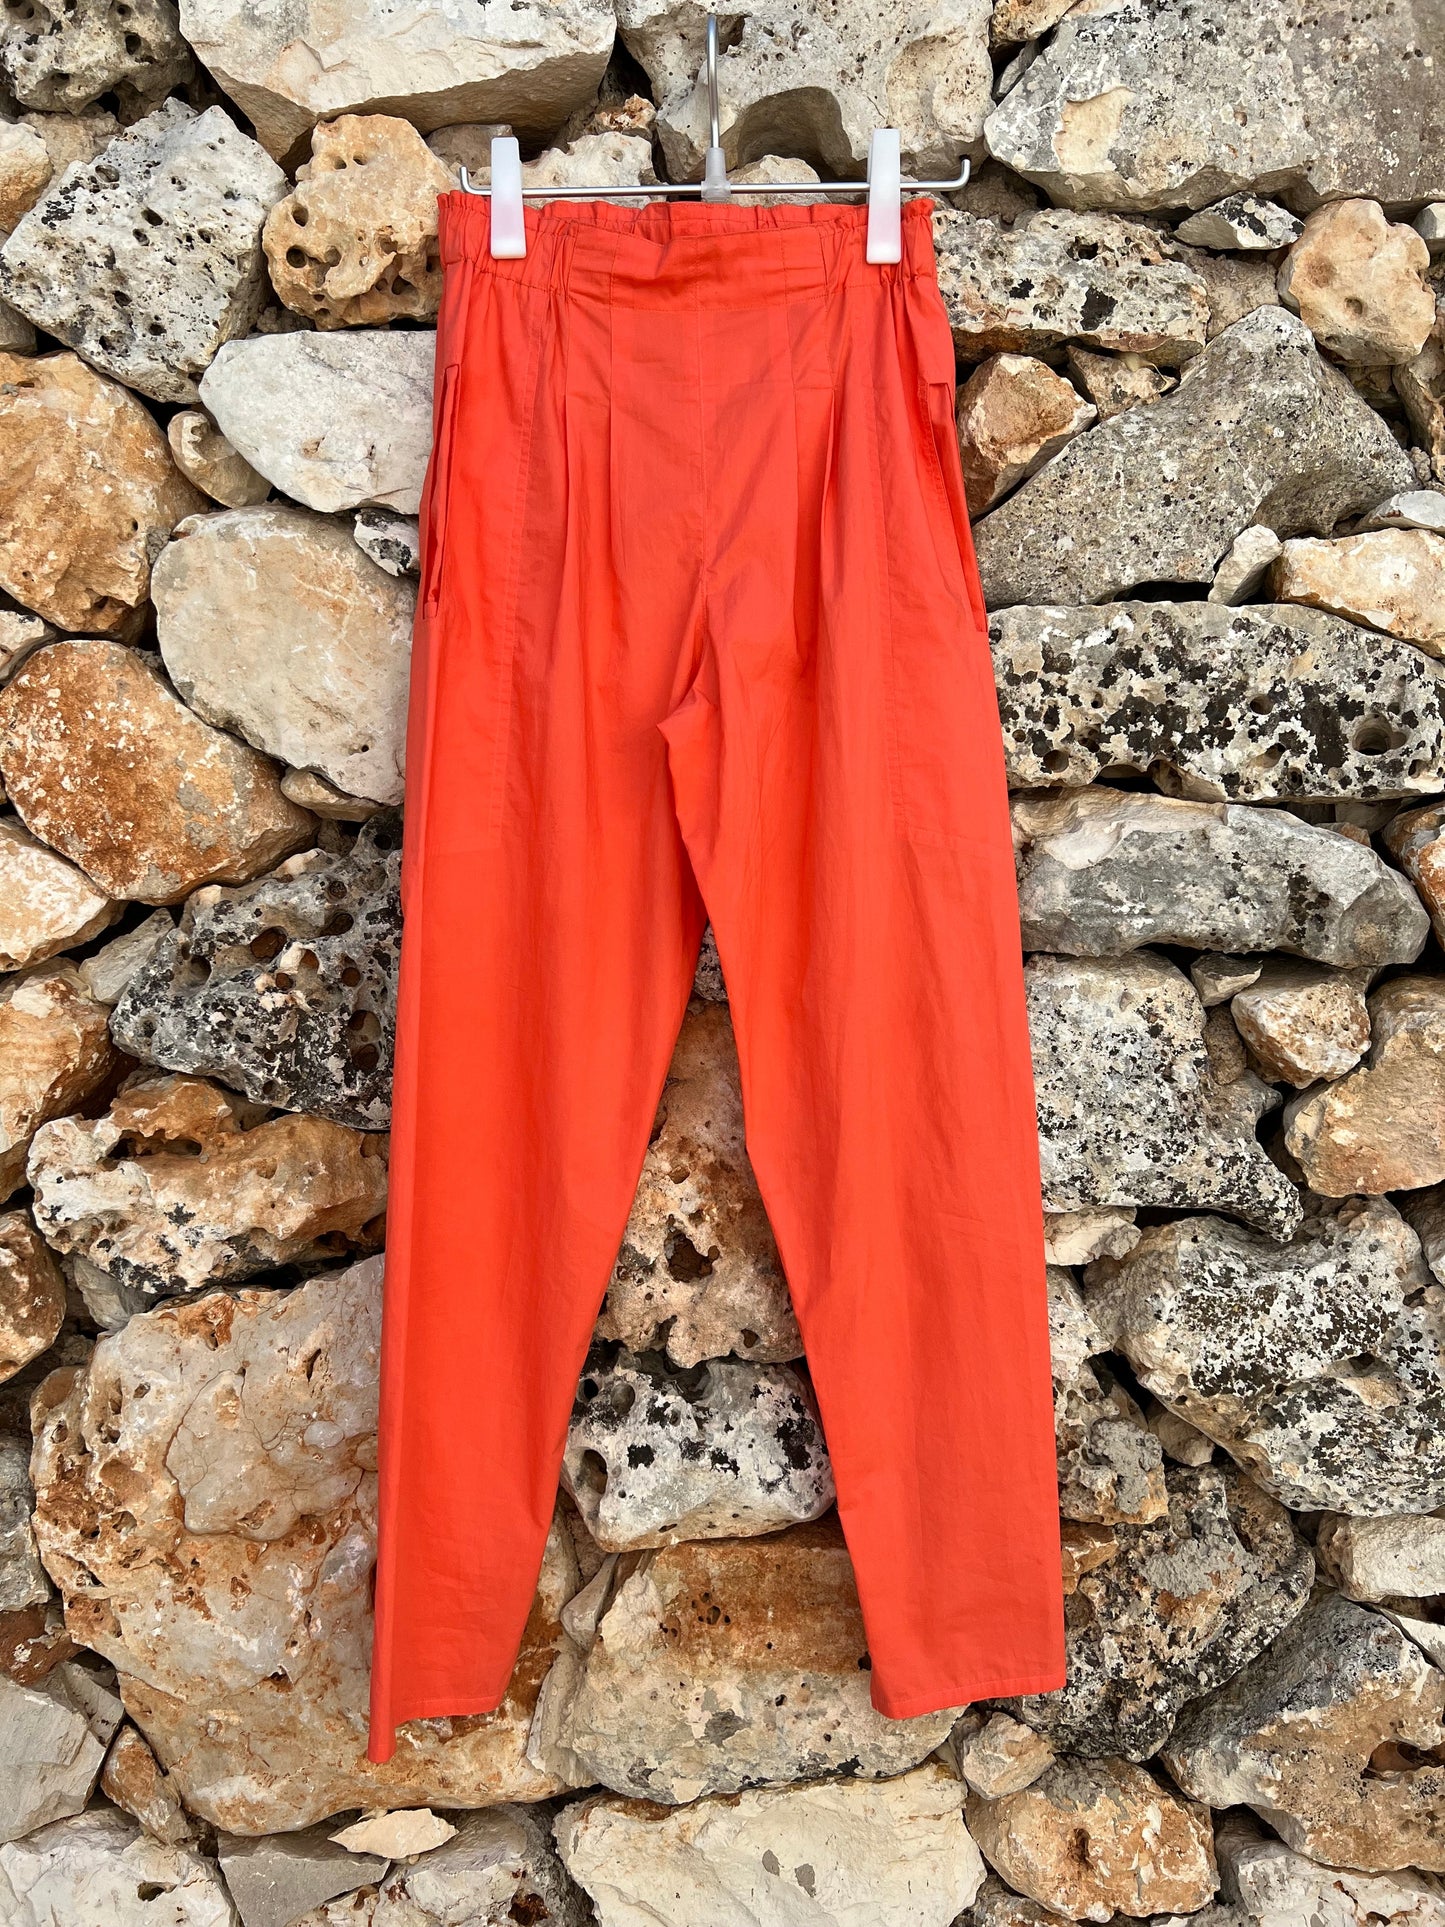 Pants Men - Opera red/orange